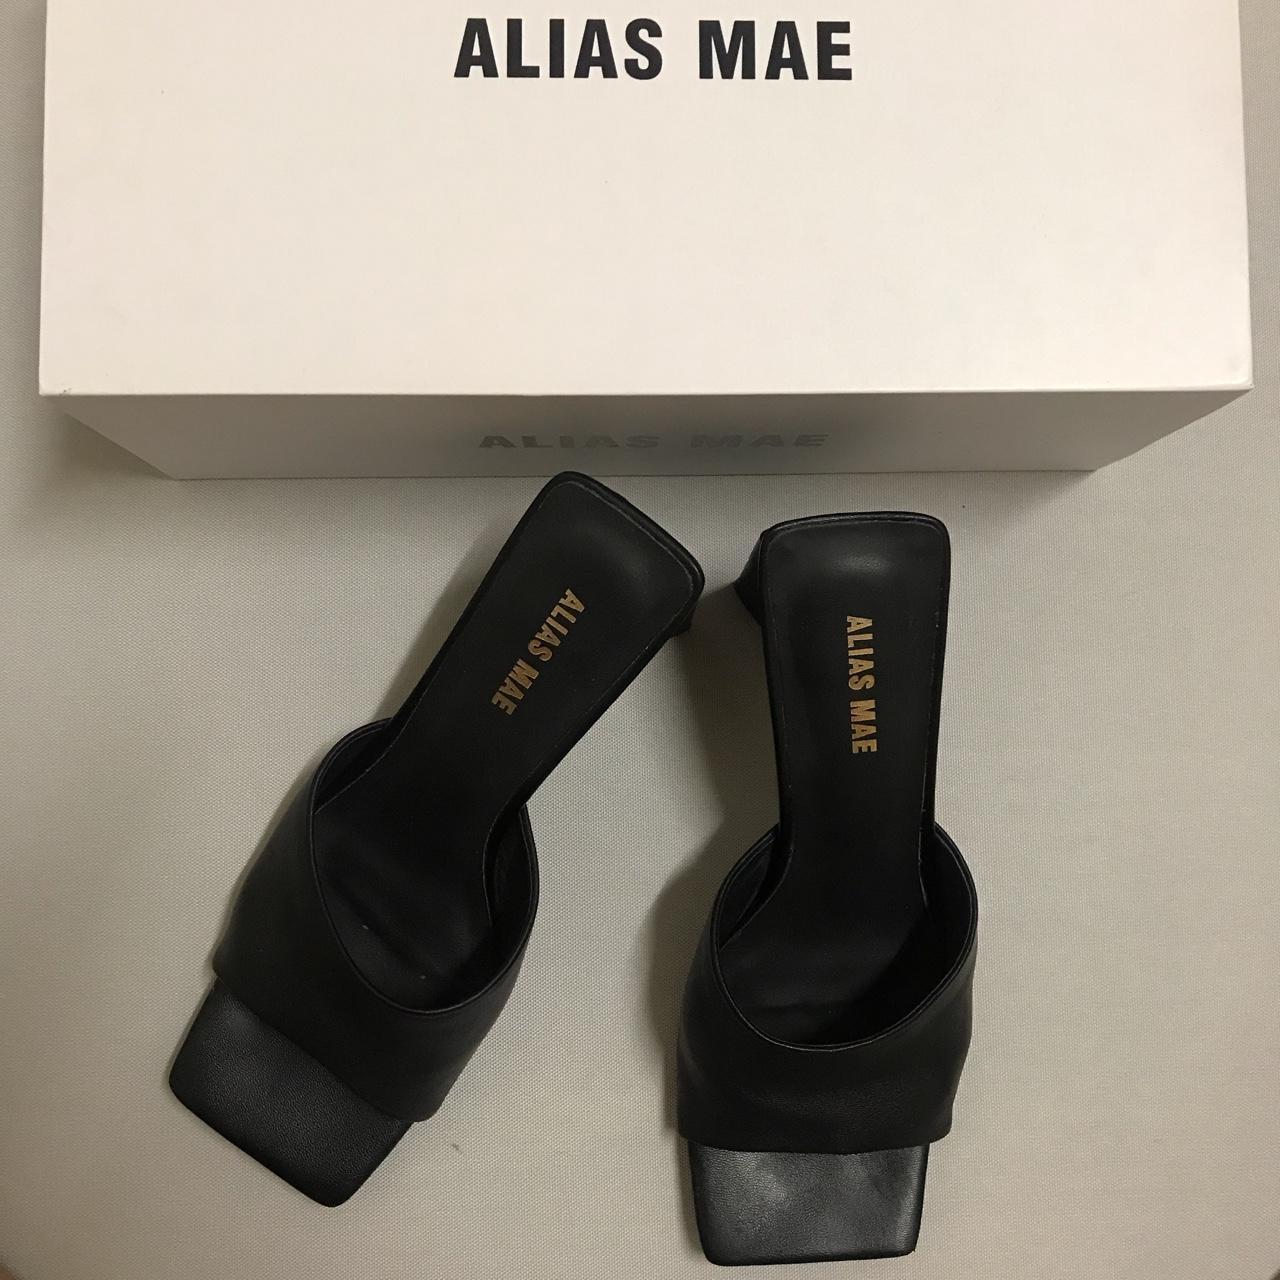 Alias Mae Macy Heel in Black Leather. Size 38 (Size... - Depop